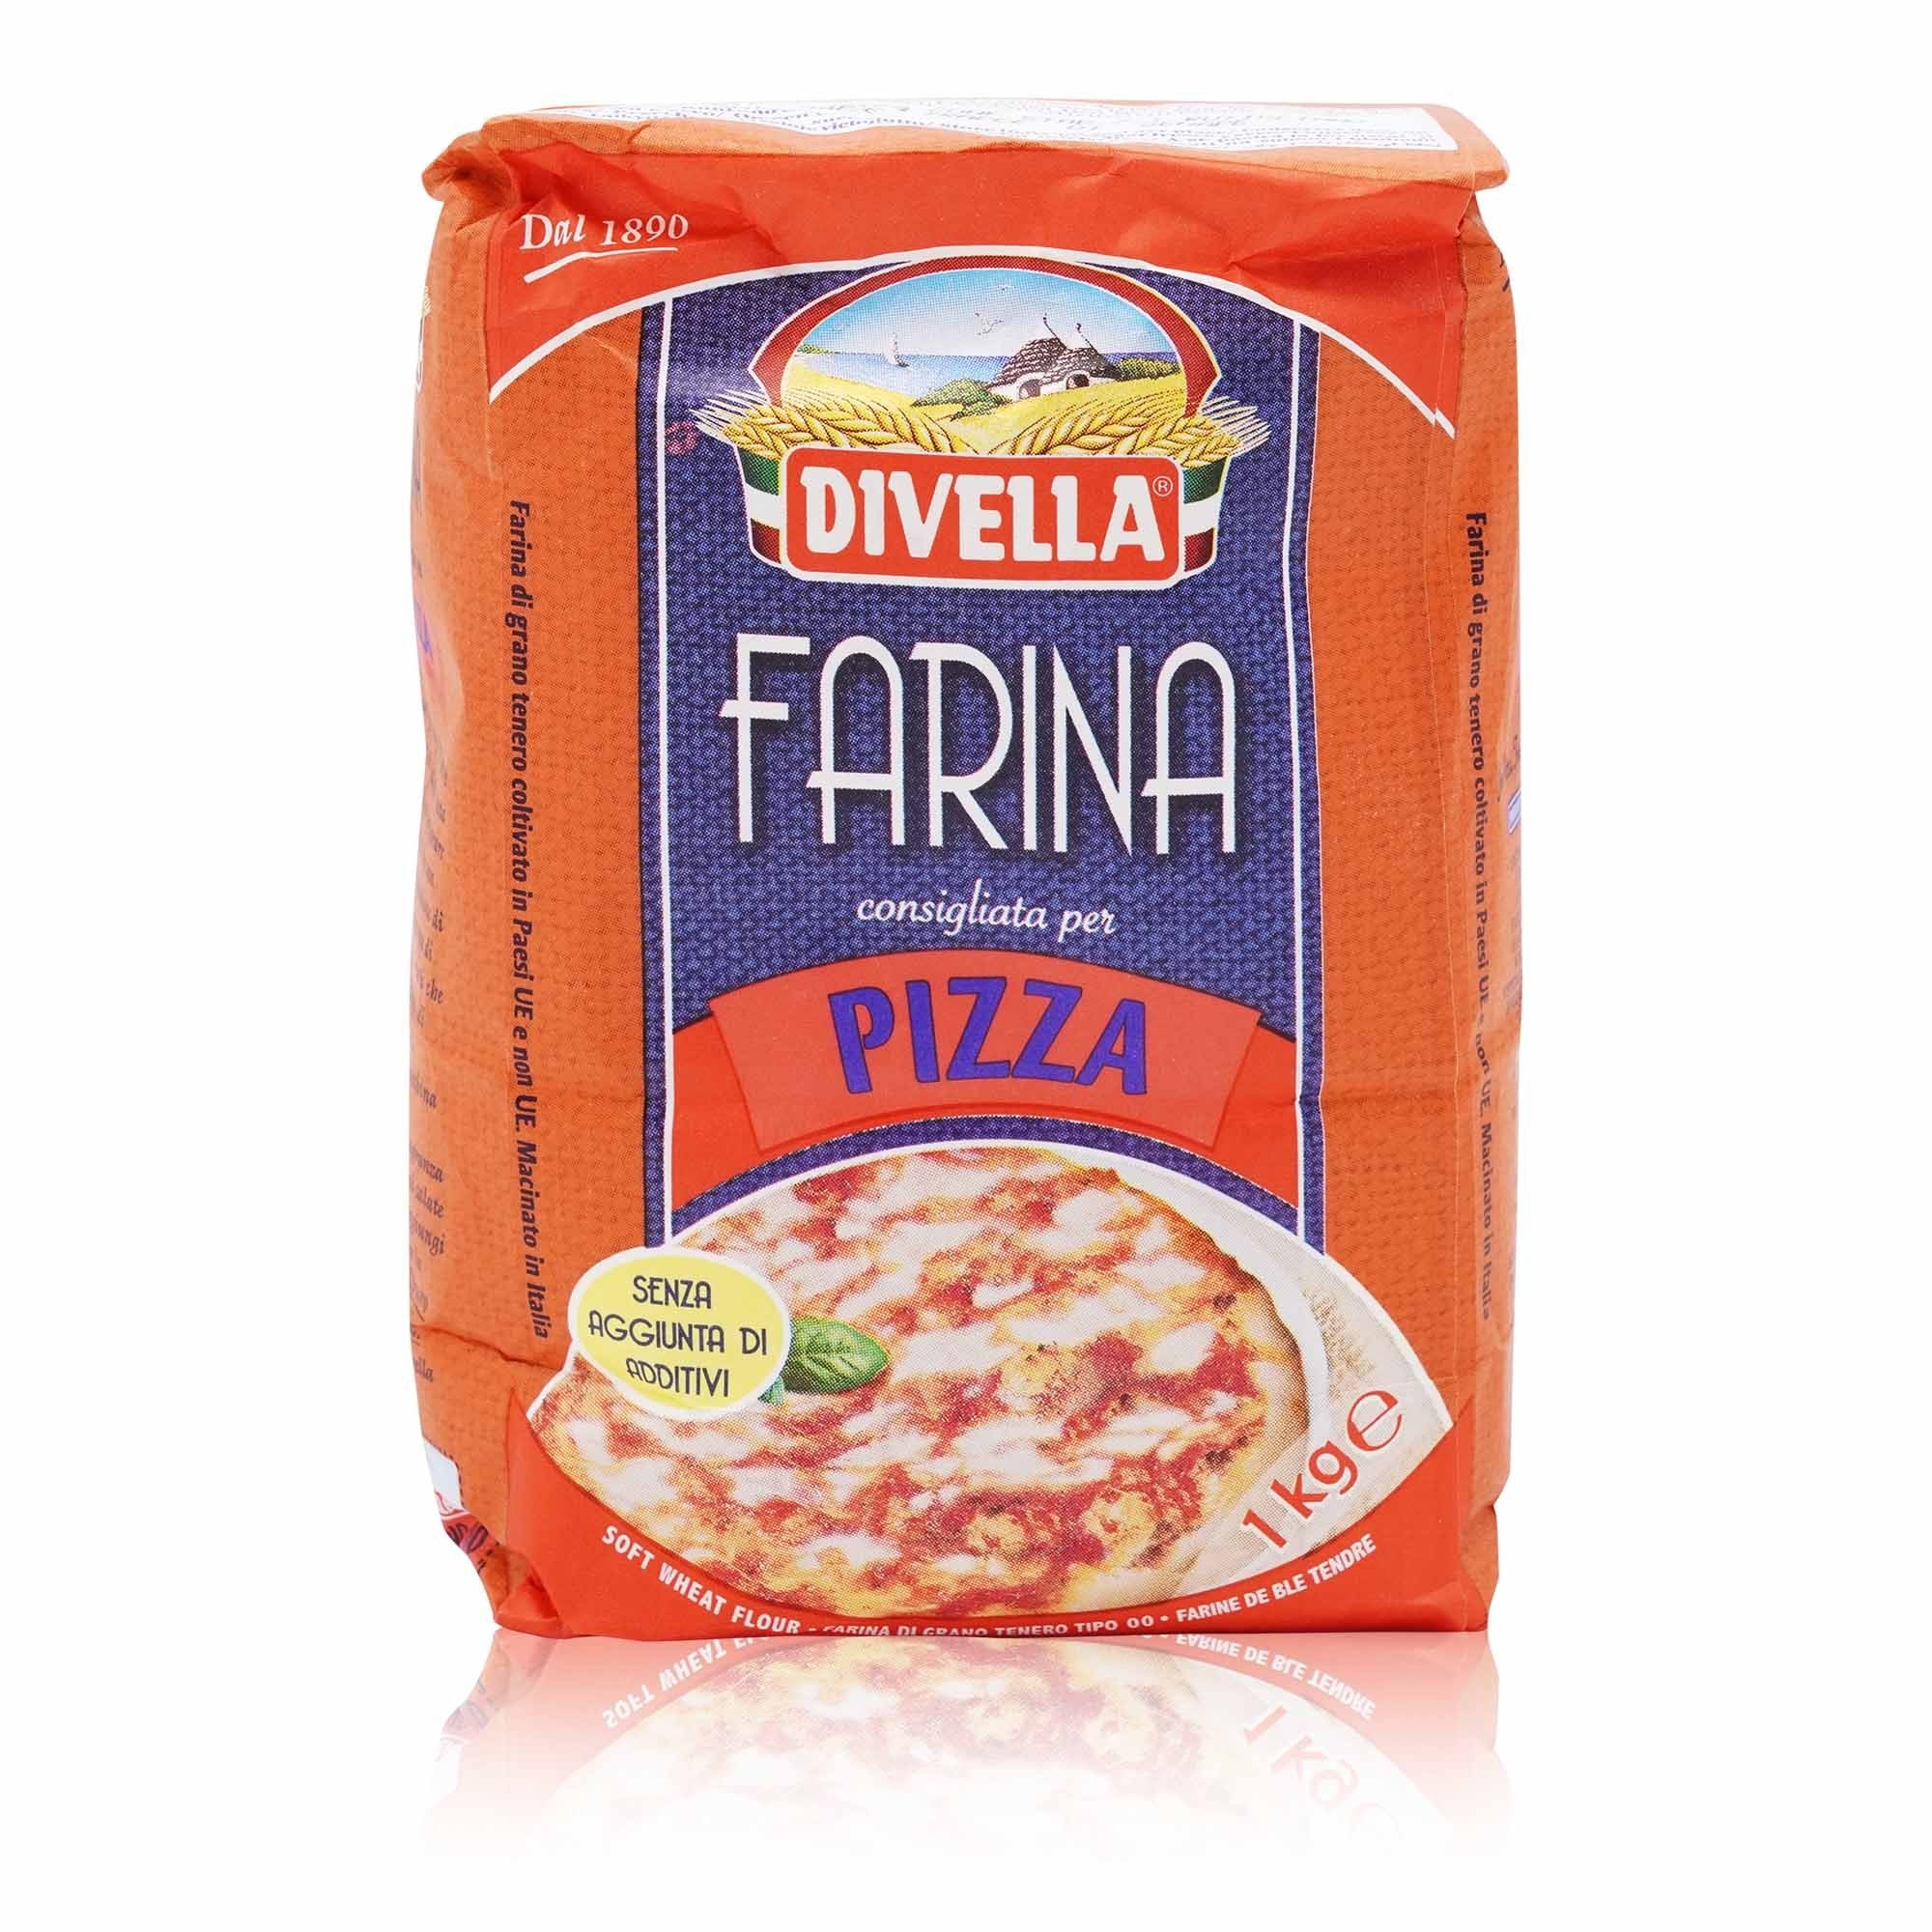 DIVELLA Farina per pizza – Mehl für Pizza - 1kg